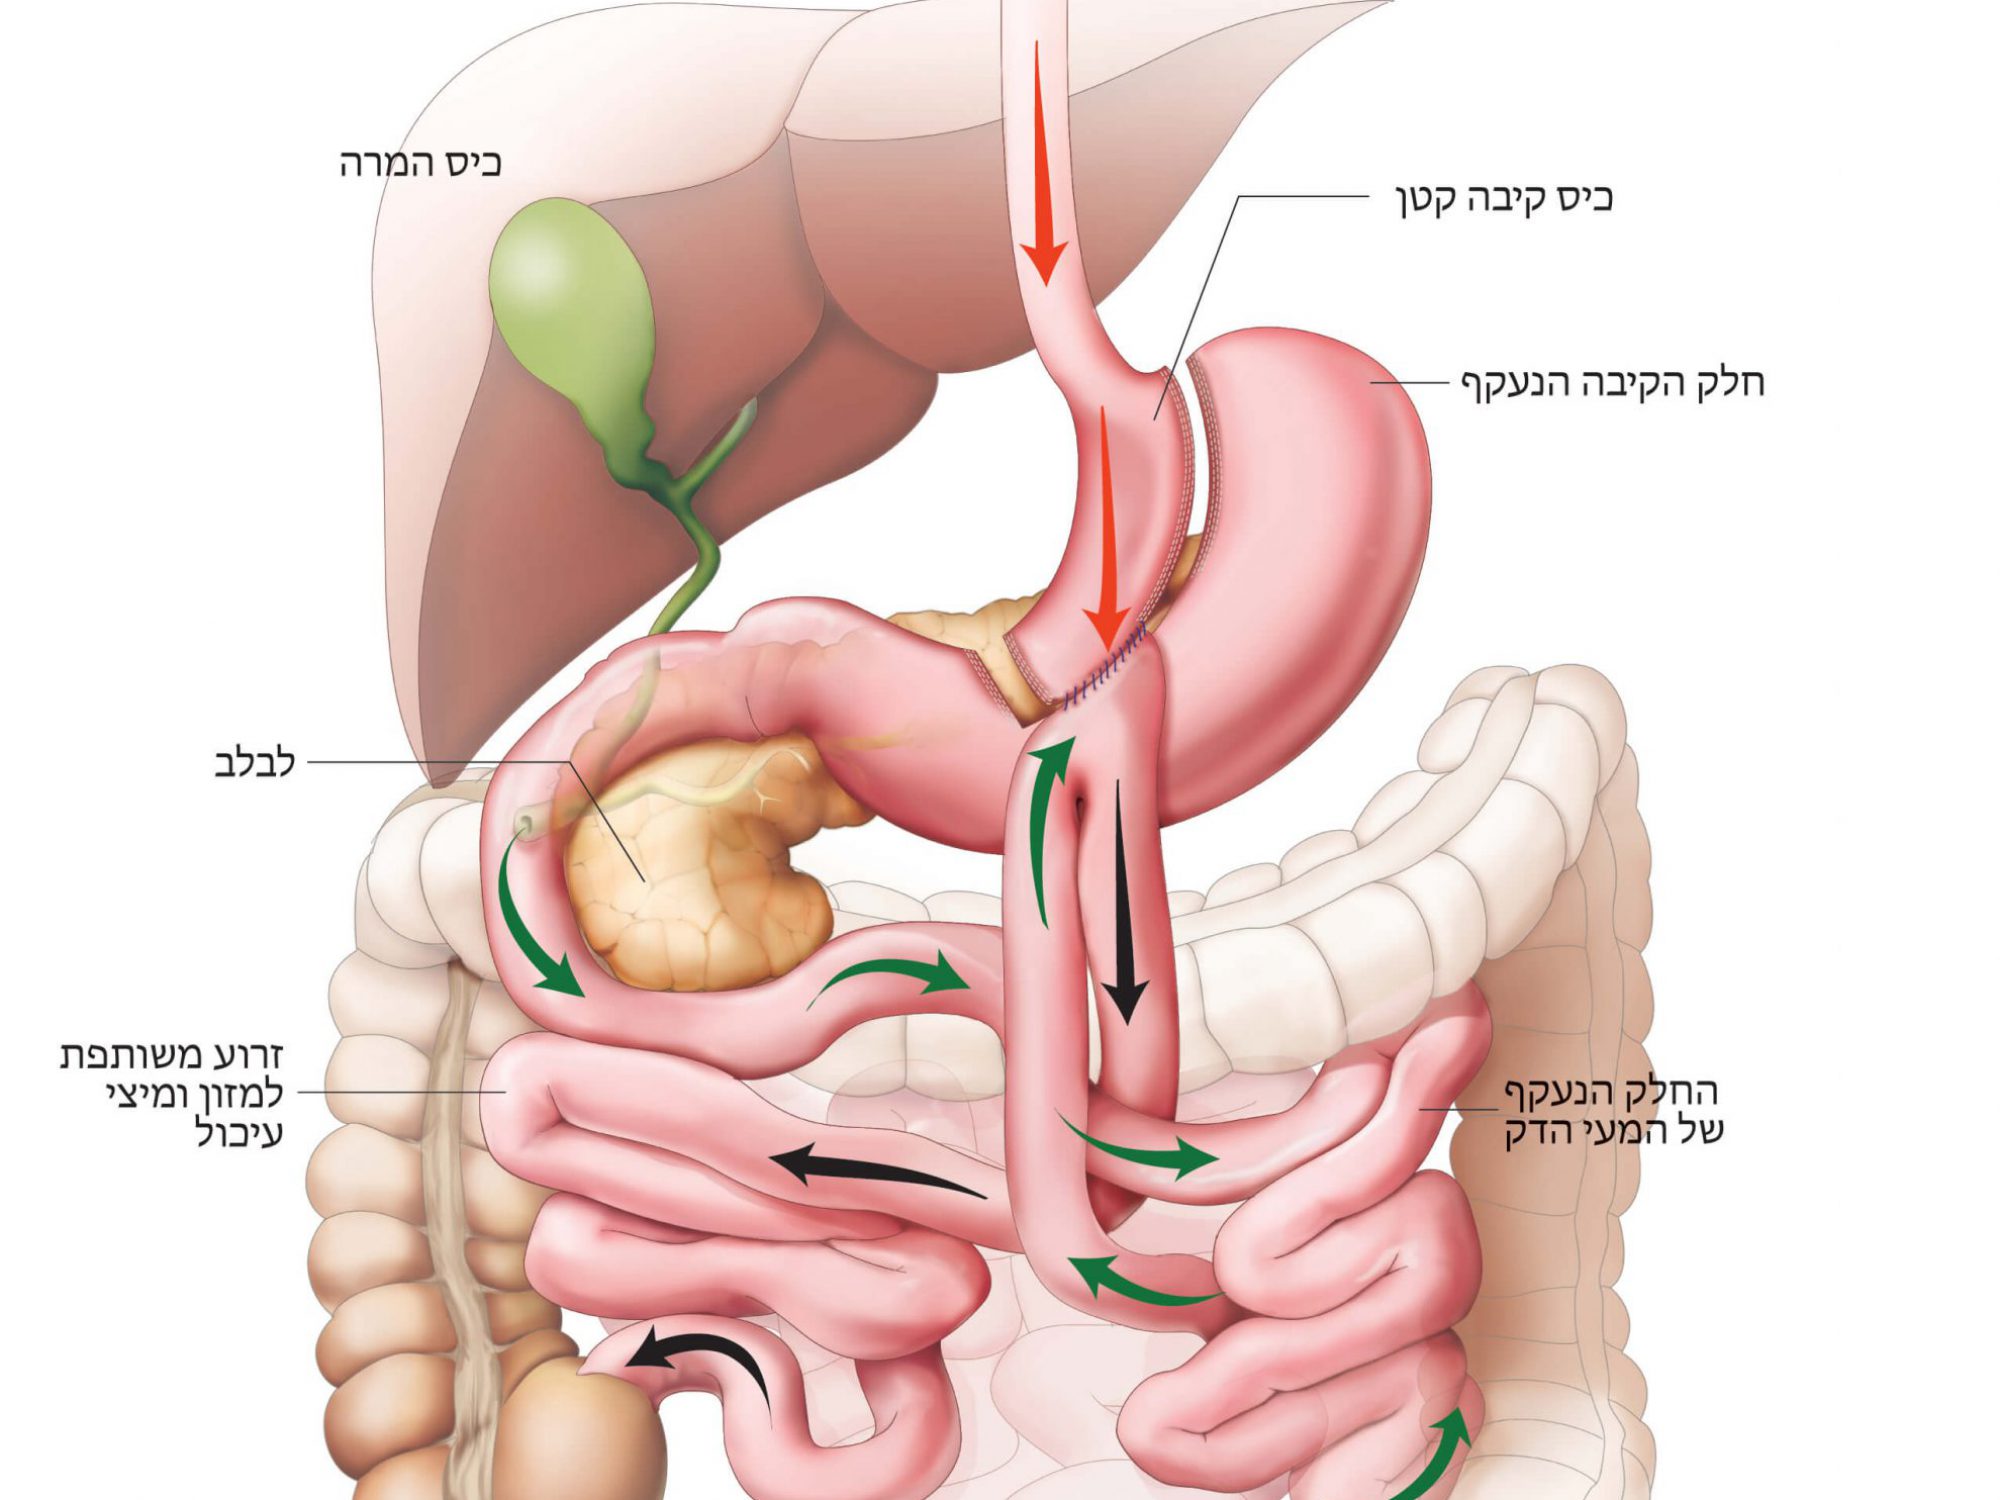 מעקף קיבה בהשקה אחת (מיני מעקף) – One Anastomosis Gastric Bypass